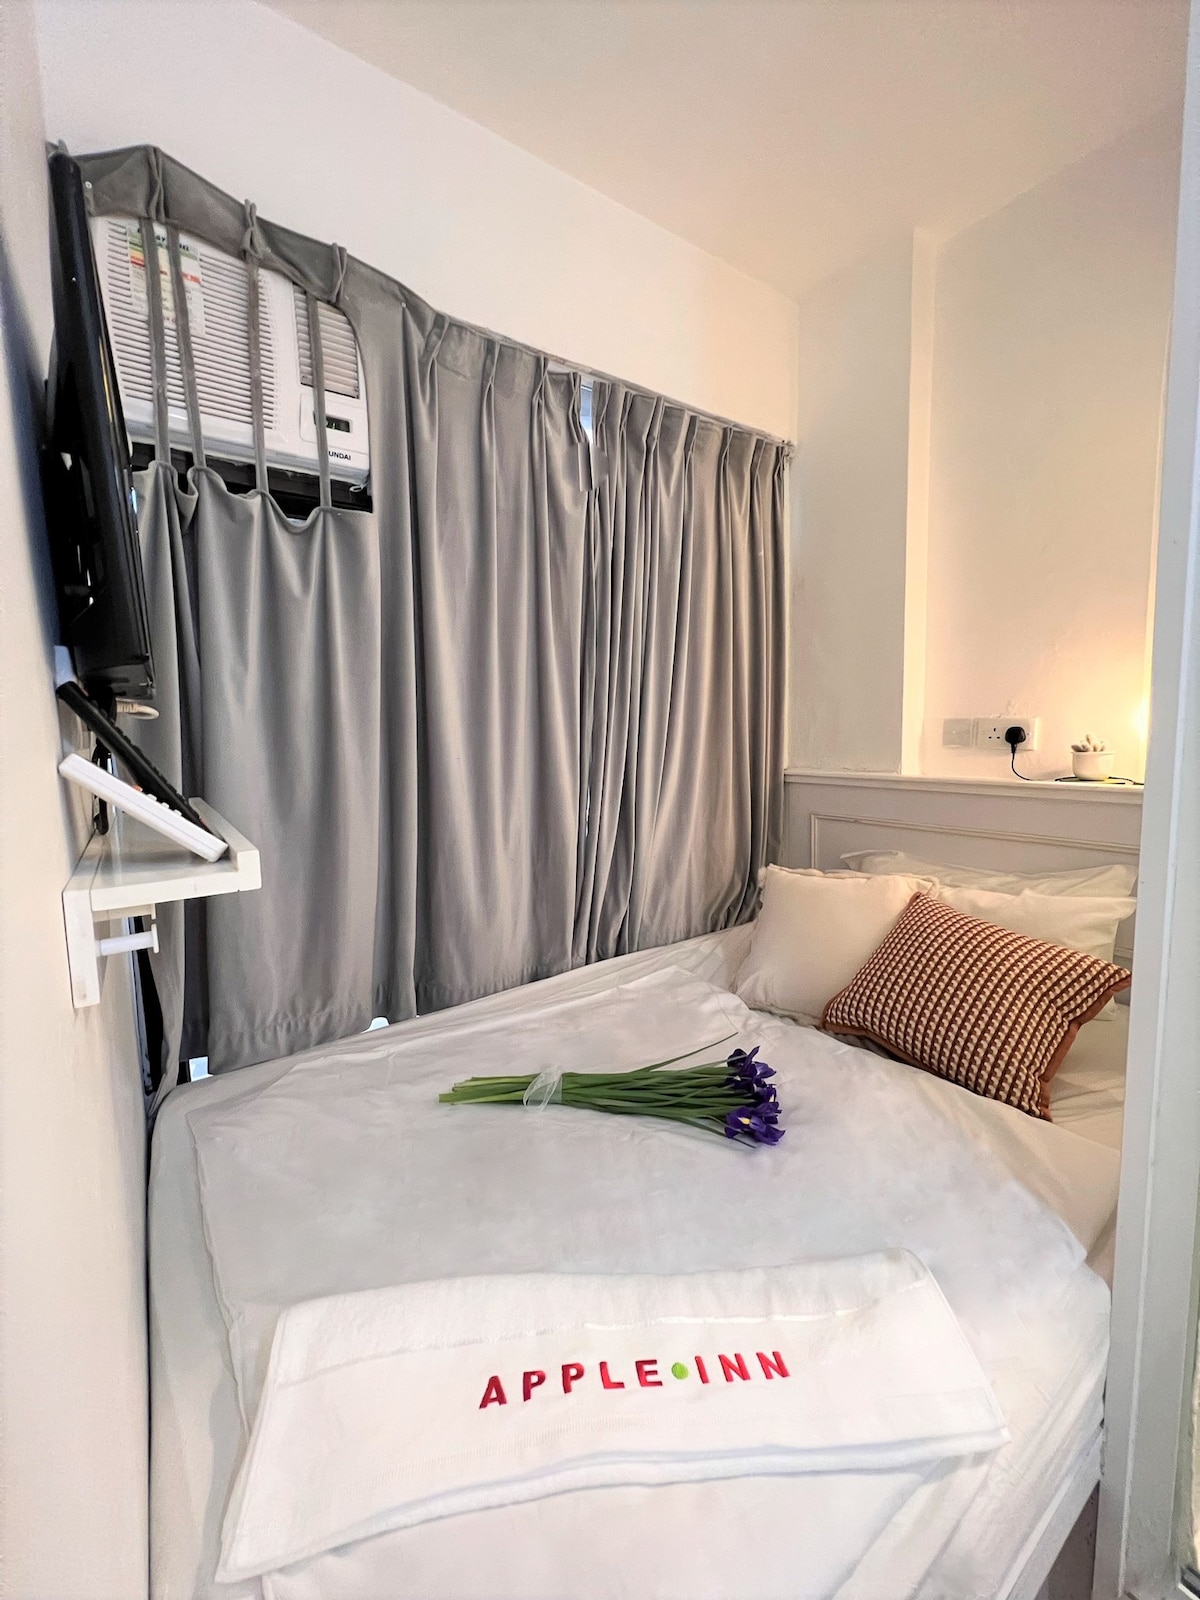 16號房 Apple Inn 銅鑼灣地鐵站3分鐘步程 酒店級設備 靜中帶旺 購物旅行背包客性價比之選